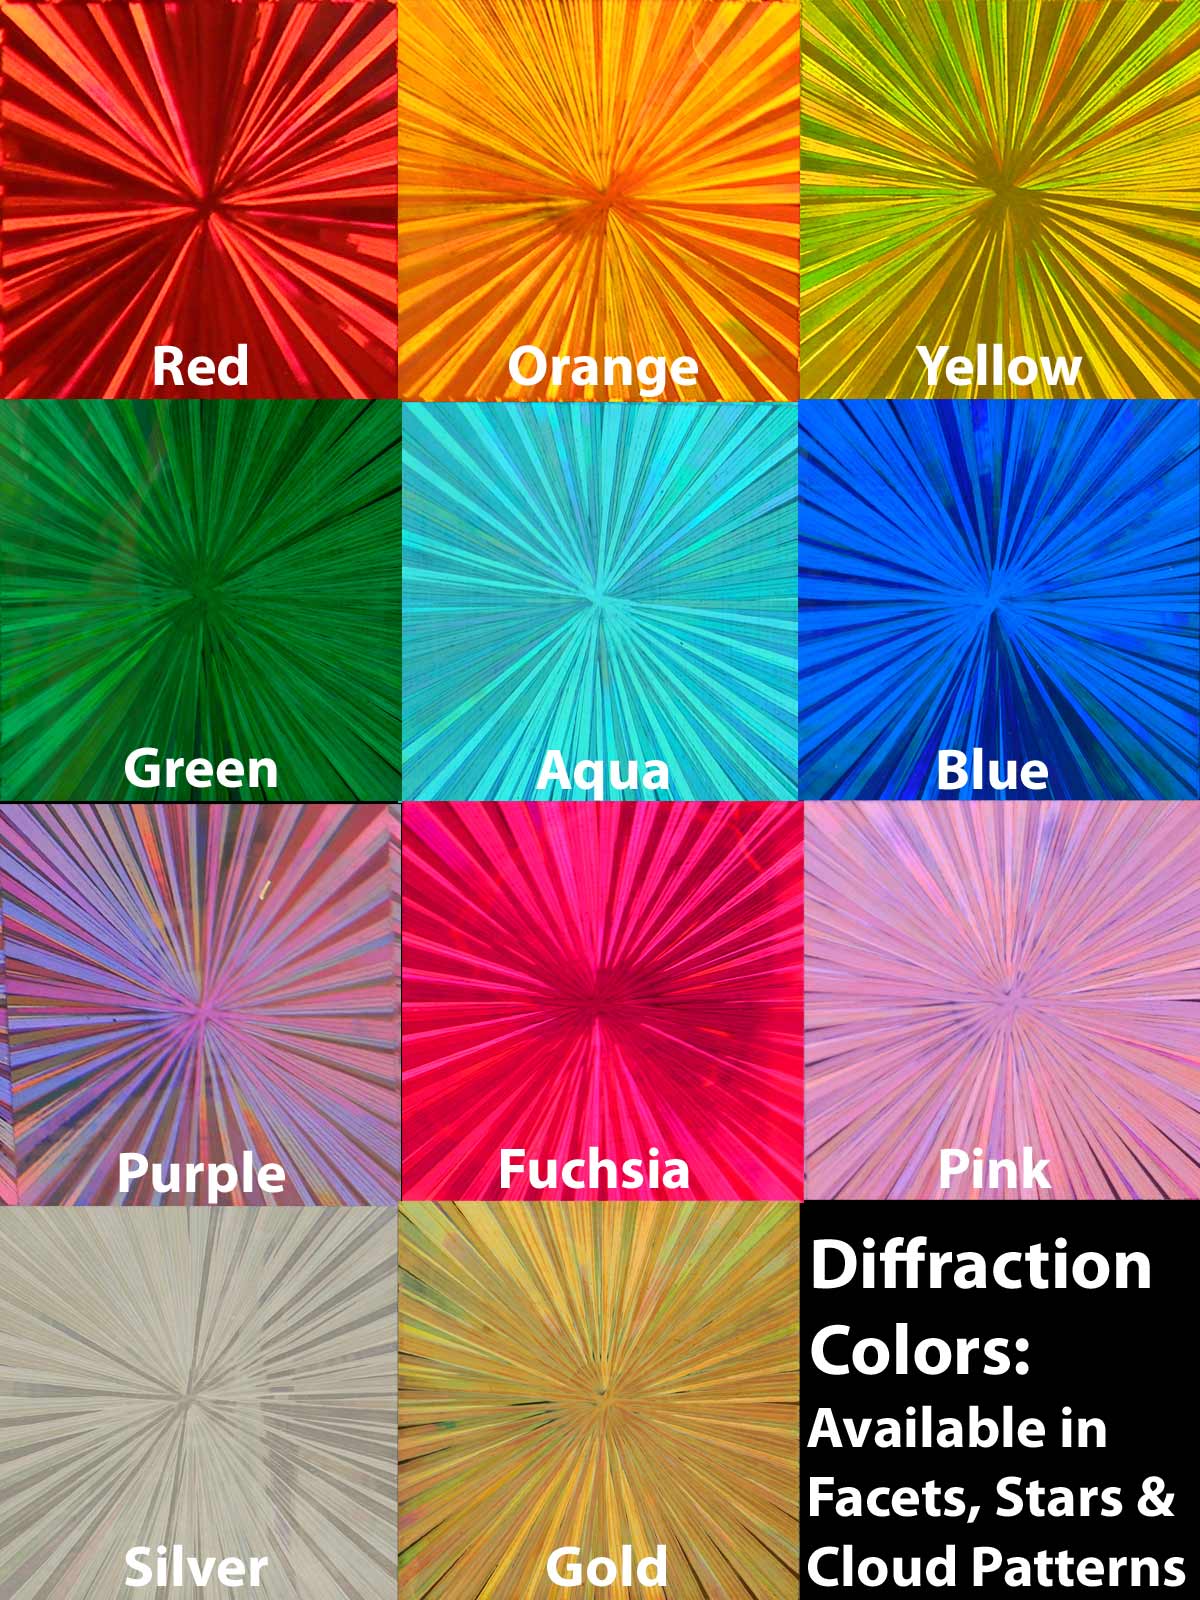 Facet Decoration Colors